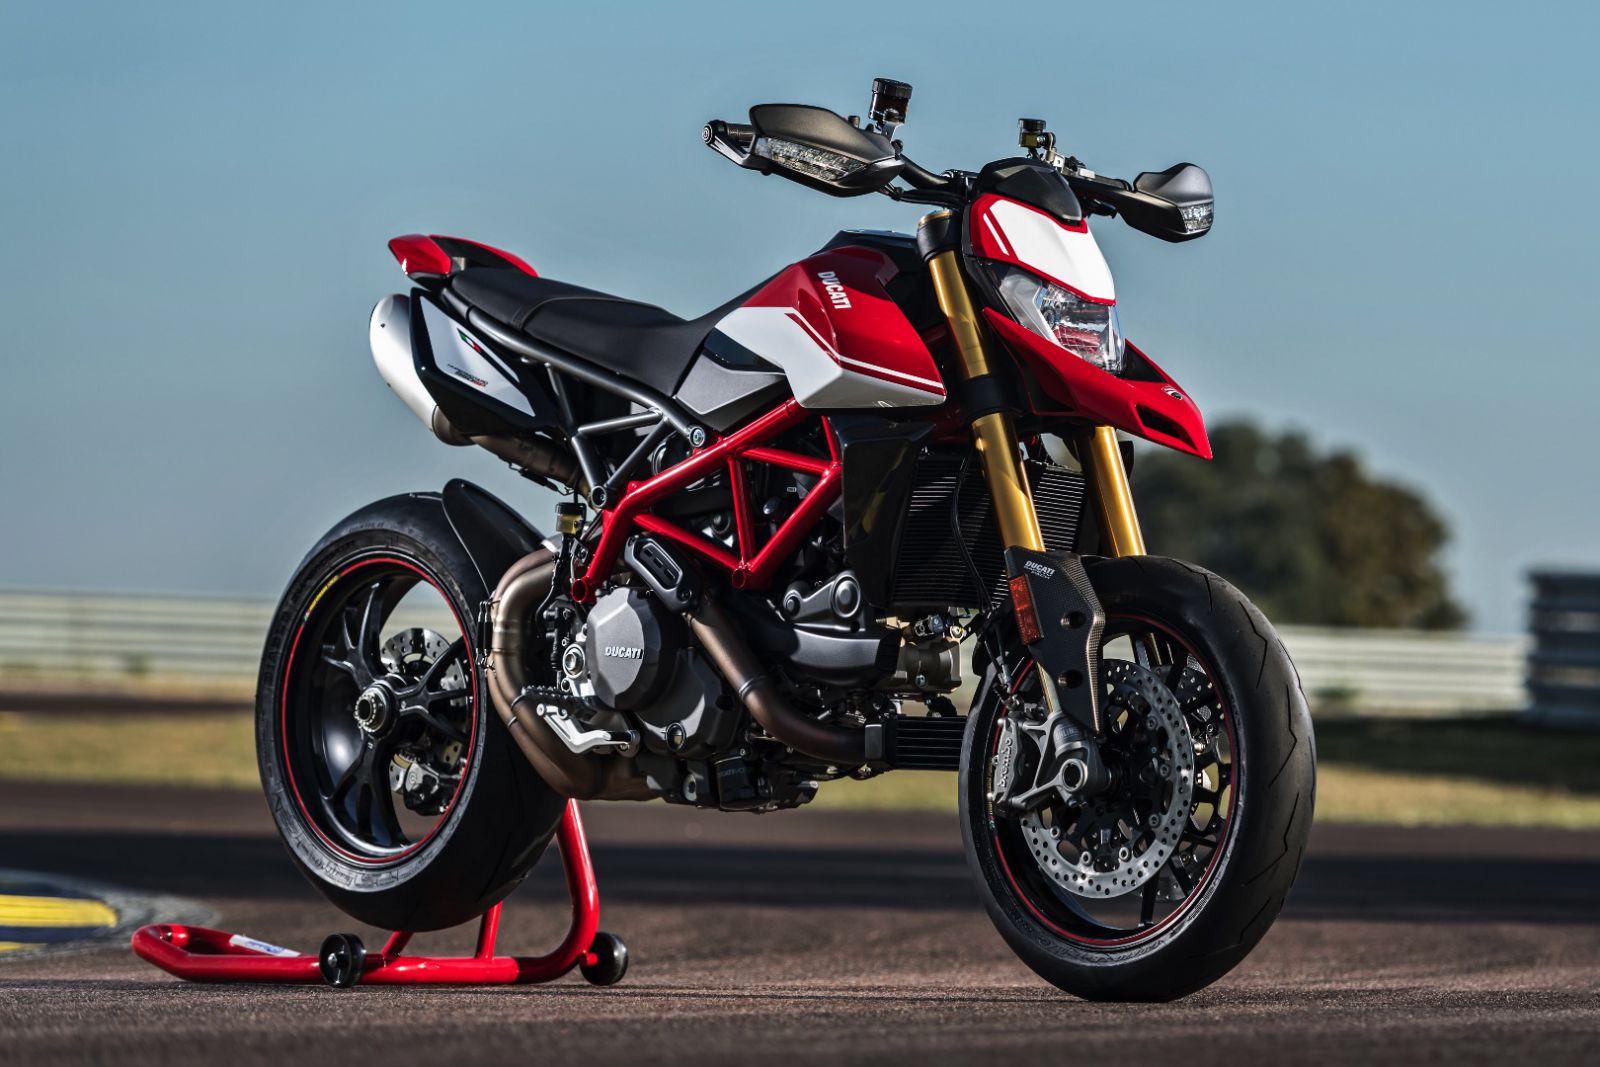 Tầm giá 400 triệu đồng, nên chọn Ducati Hypermotard 950 hay Triumph Tiger 800 XRT? - 1